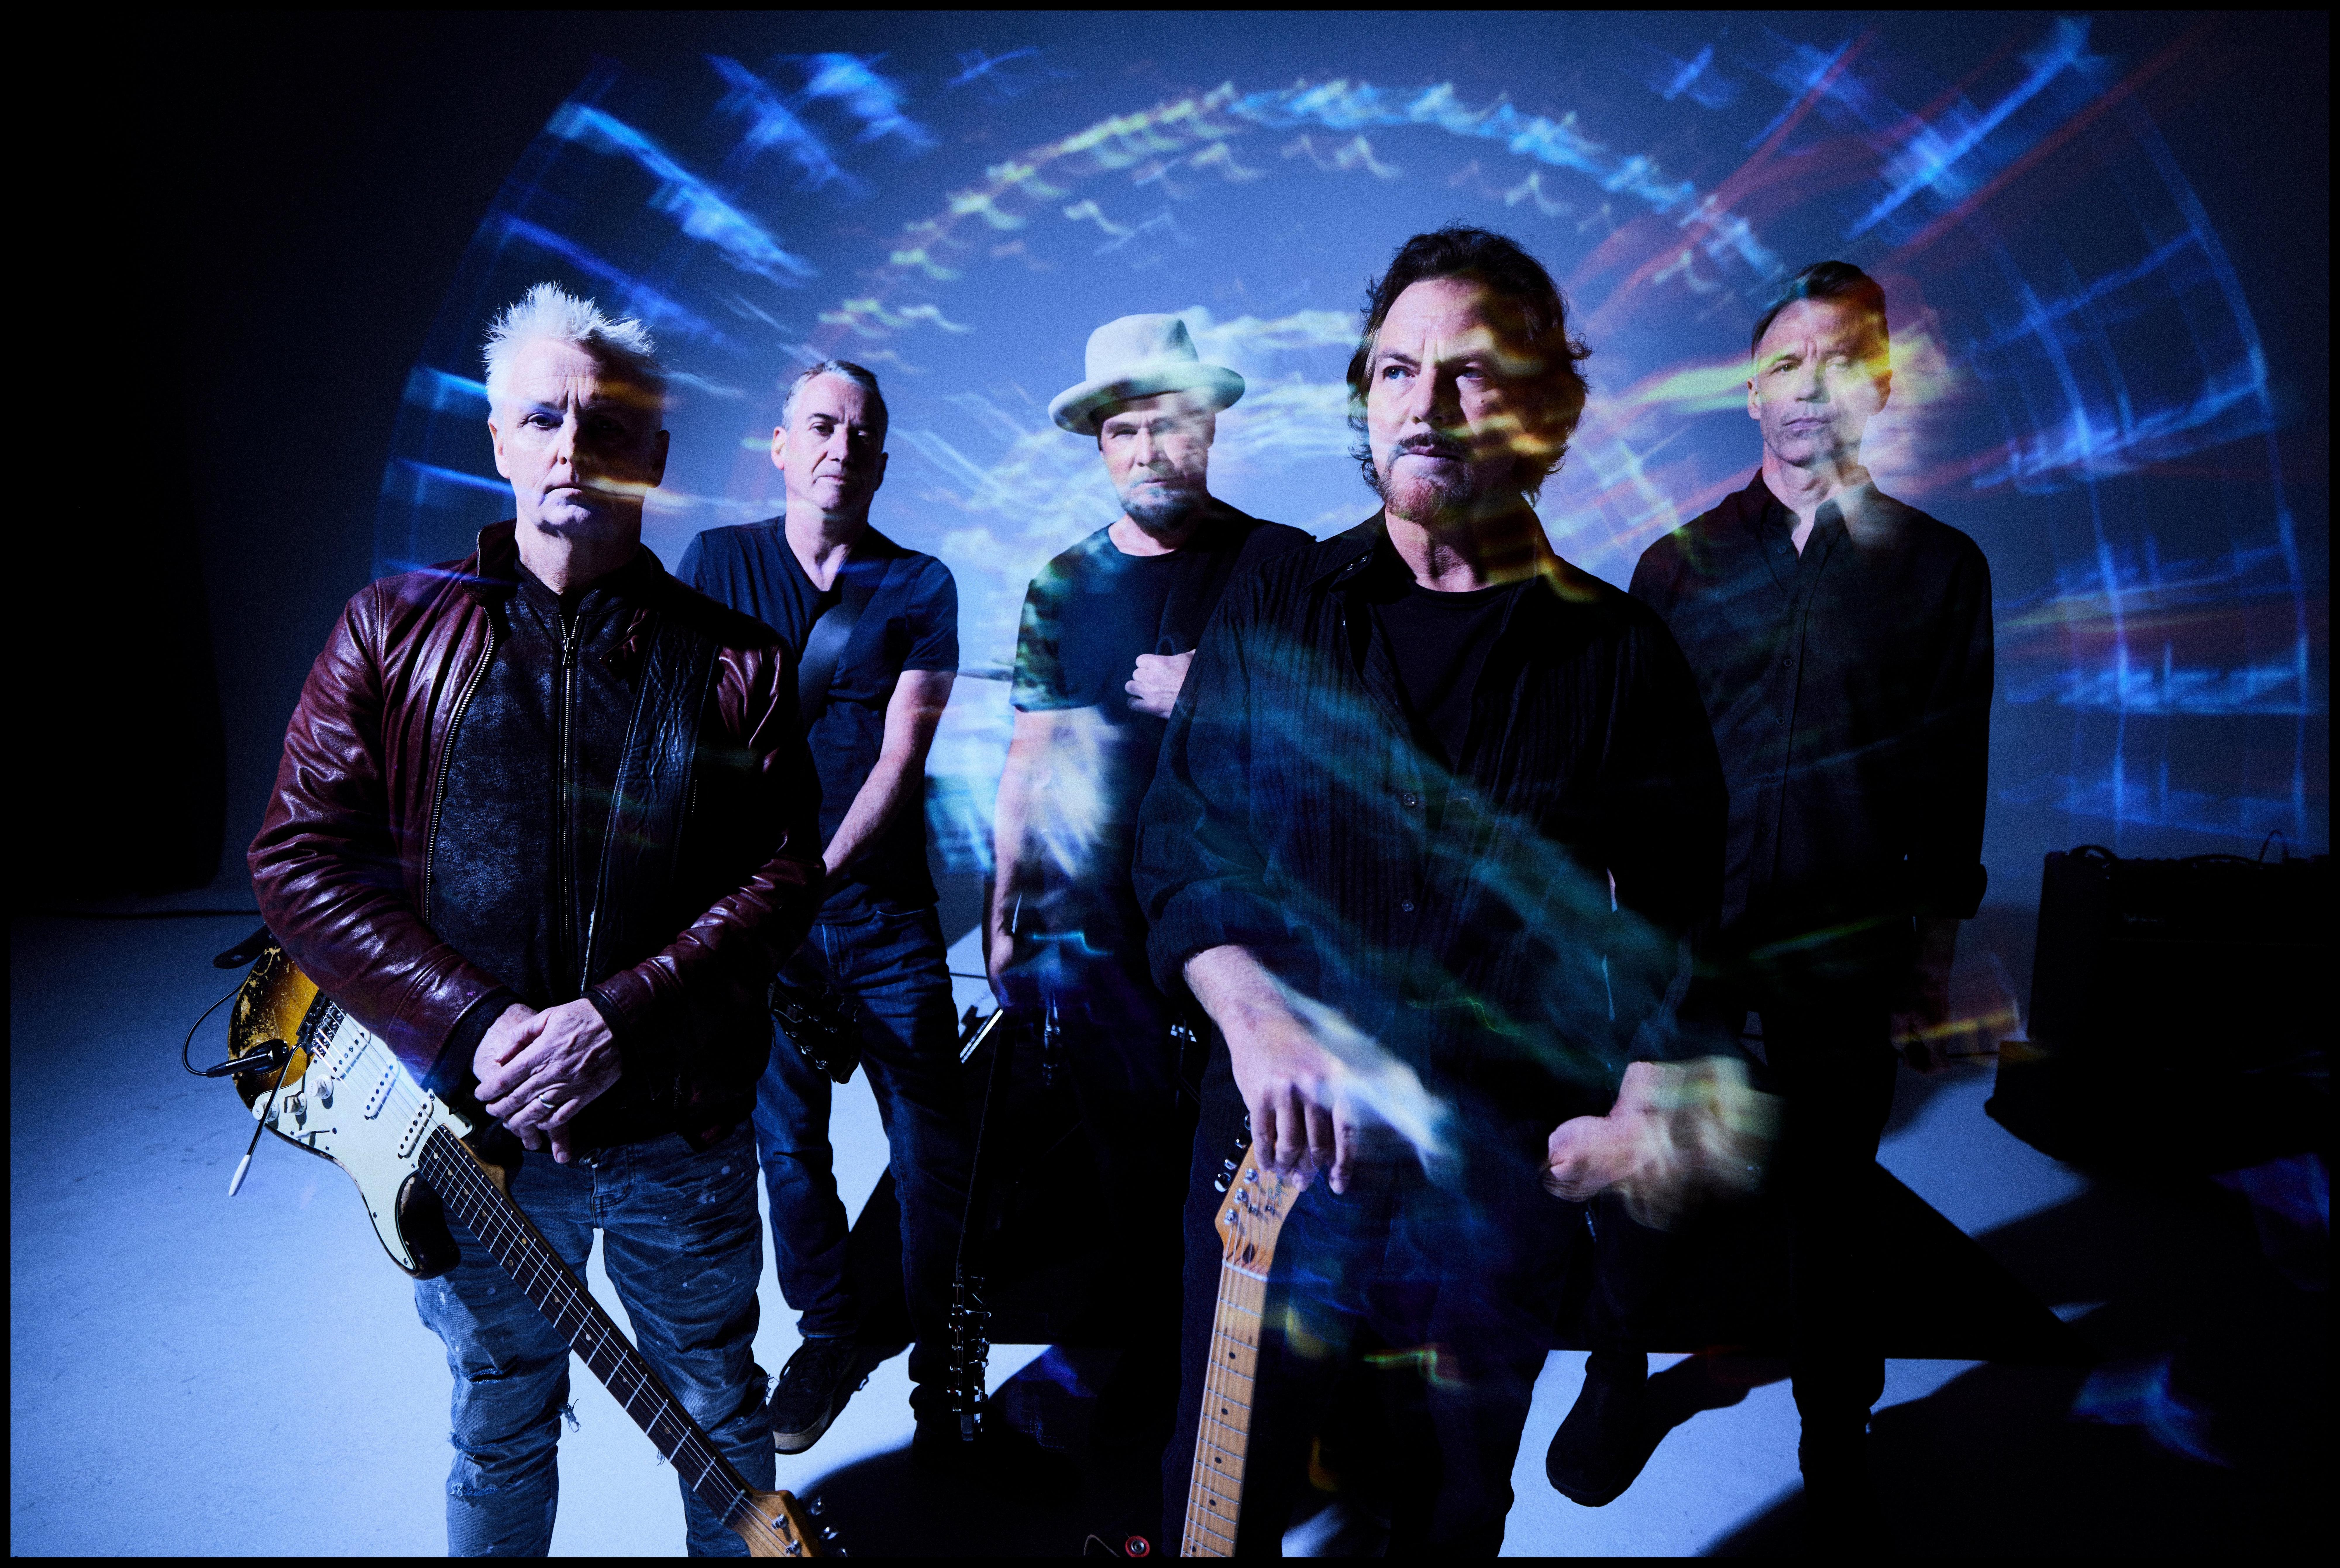 Pearl Jam posed ahead of Dark Matter